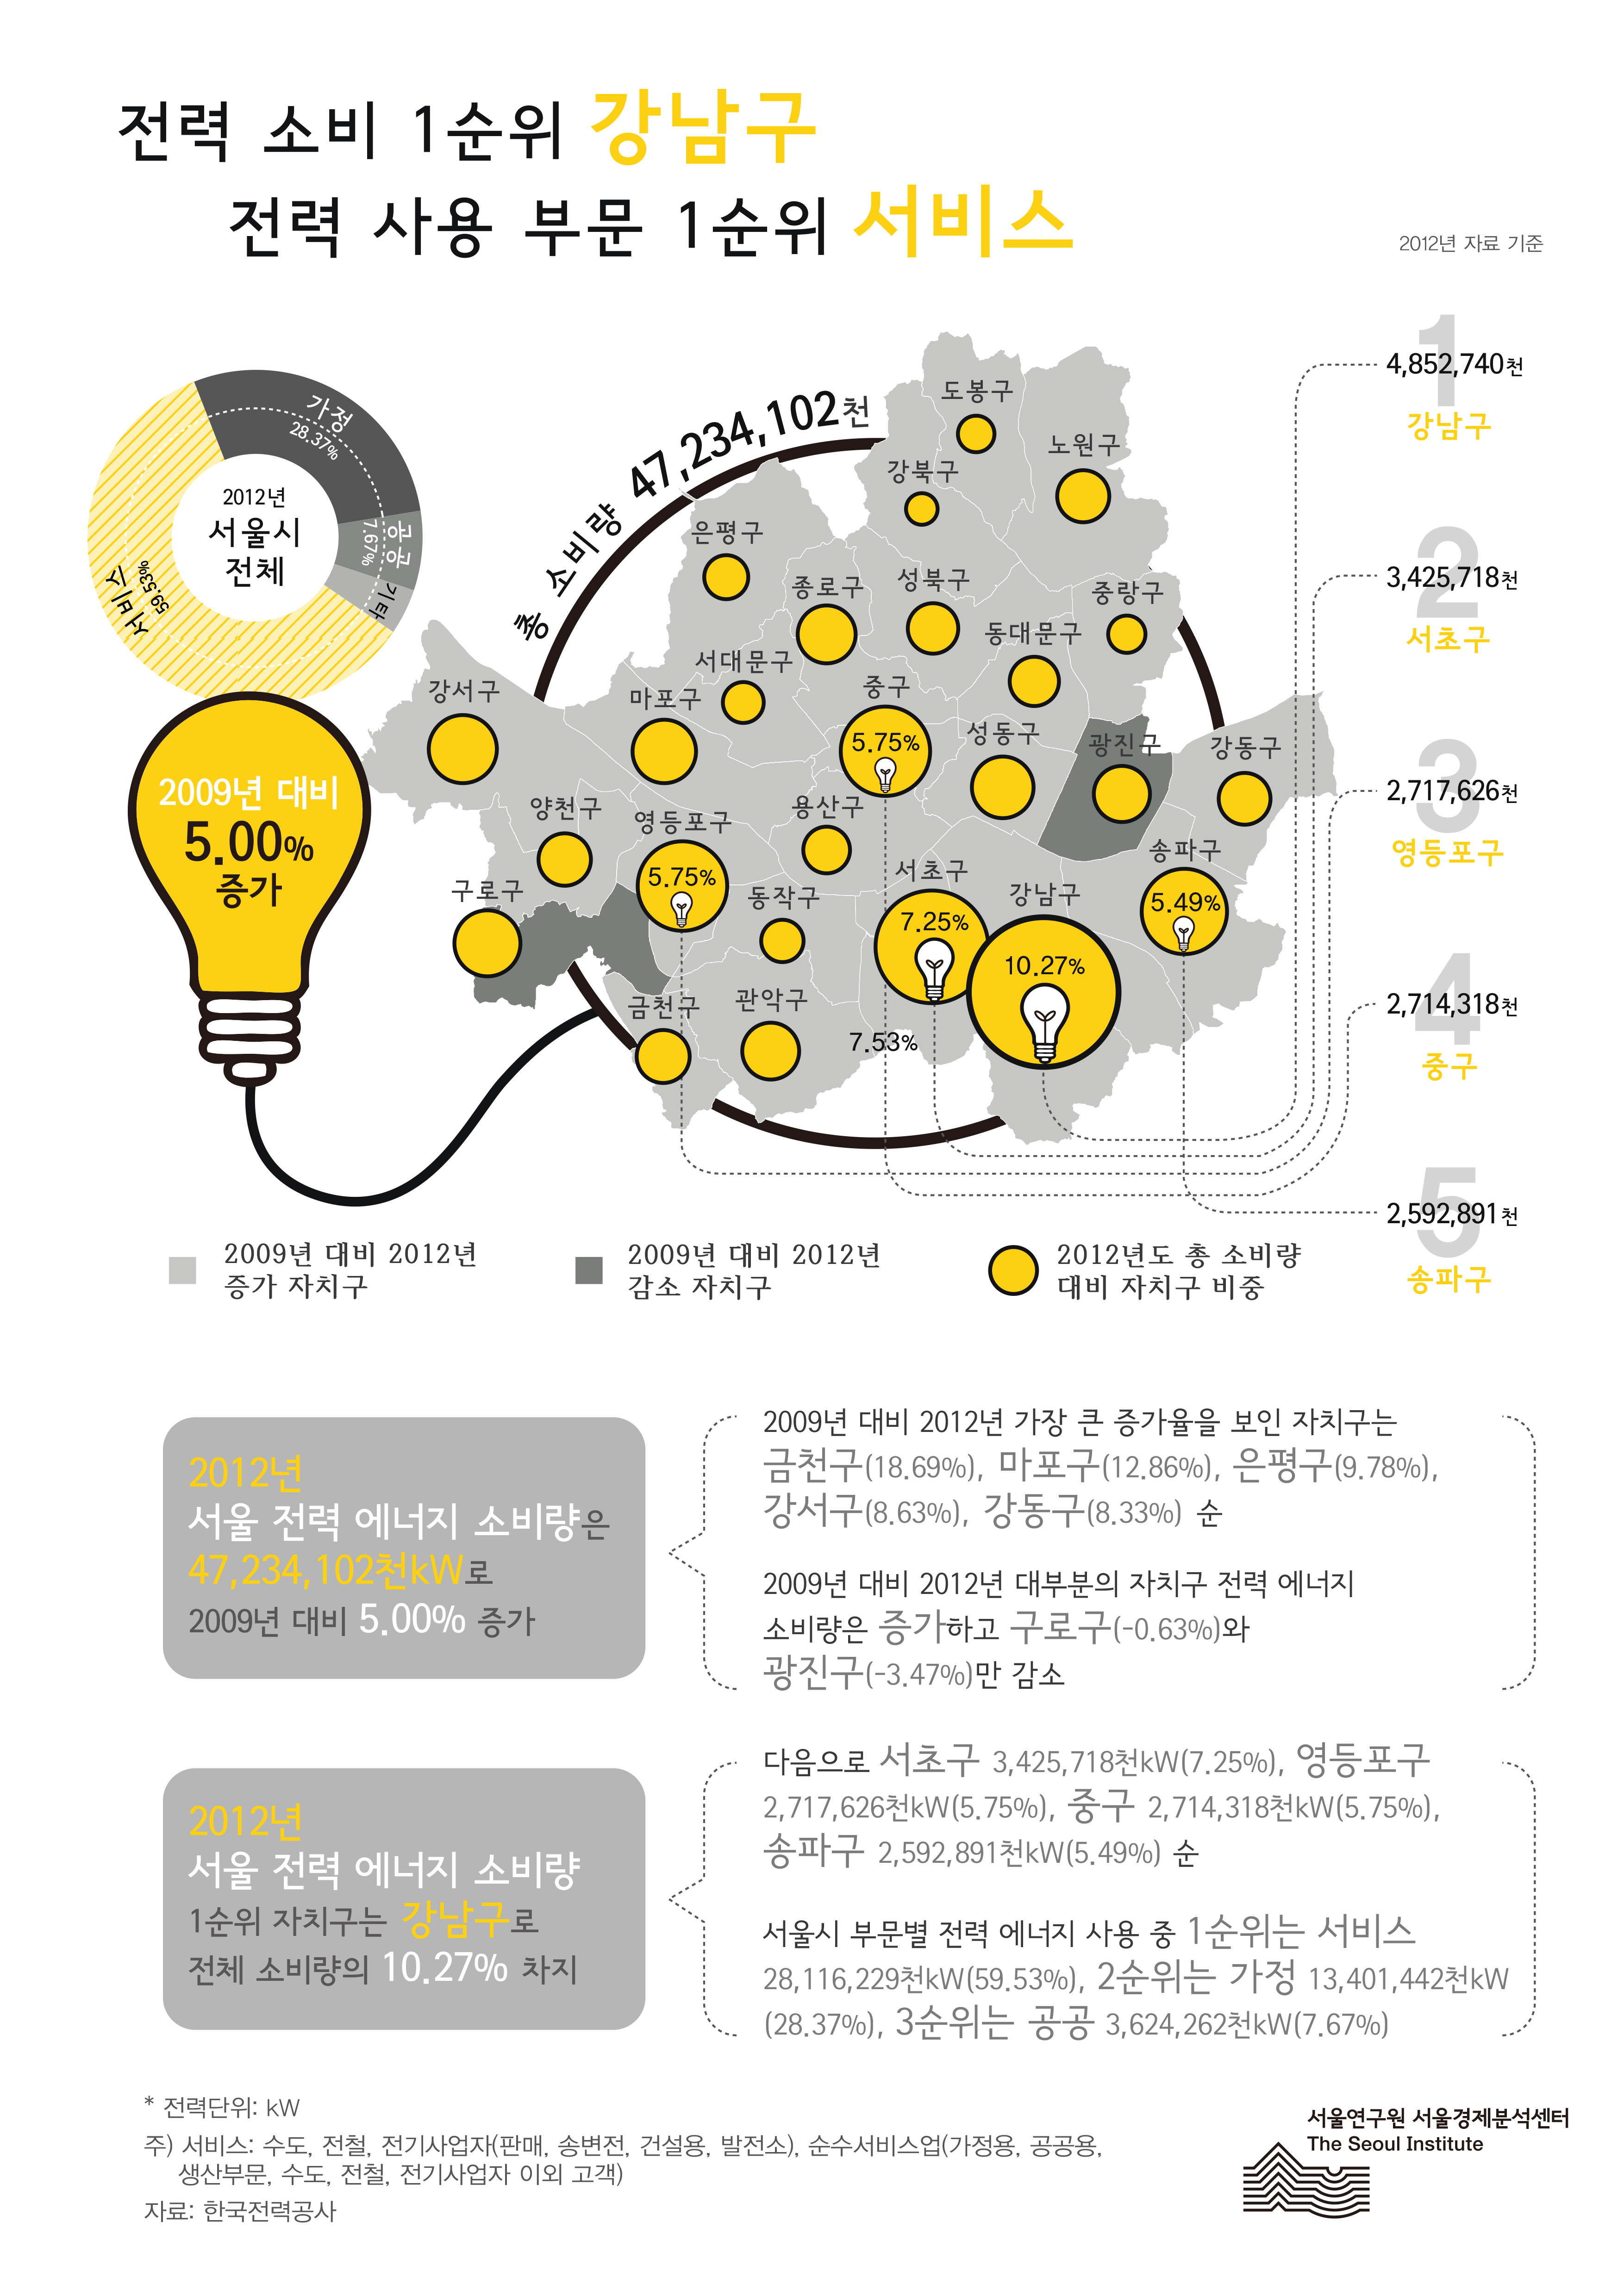 서울시 구별 전력 에너지 소비량 서울인포그래픽스 제31호 2013년 4월 29일 전력 소비 1순위 강남구, 전력 사용 부문 1순위 서비스로 정리될 수 있습니다. 인포그래픽으로 제공되는 그래픽은 하단에 표로 자세히 제공됩니다.